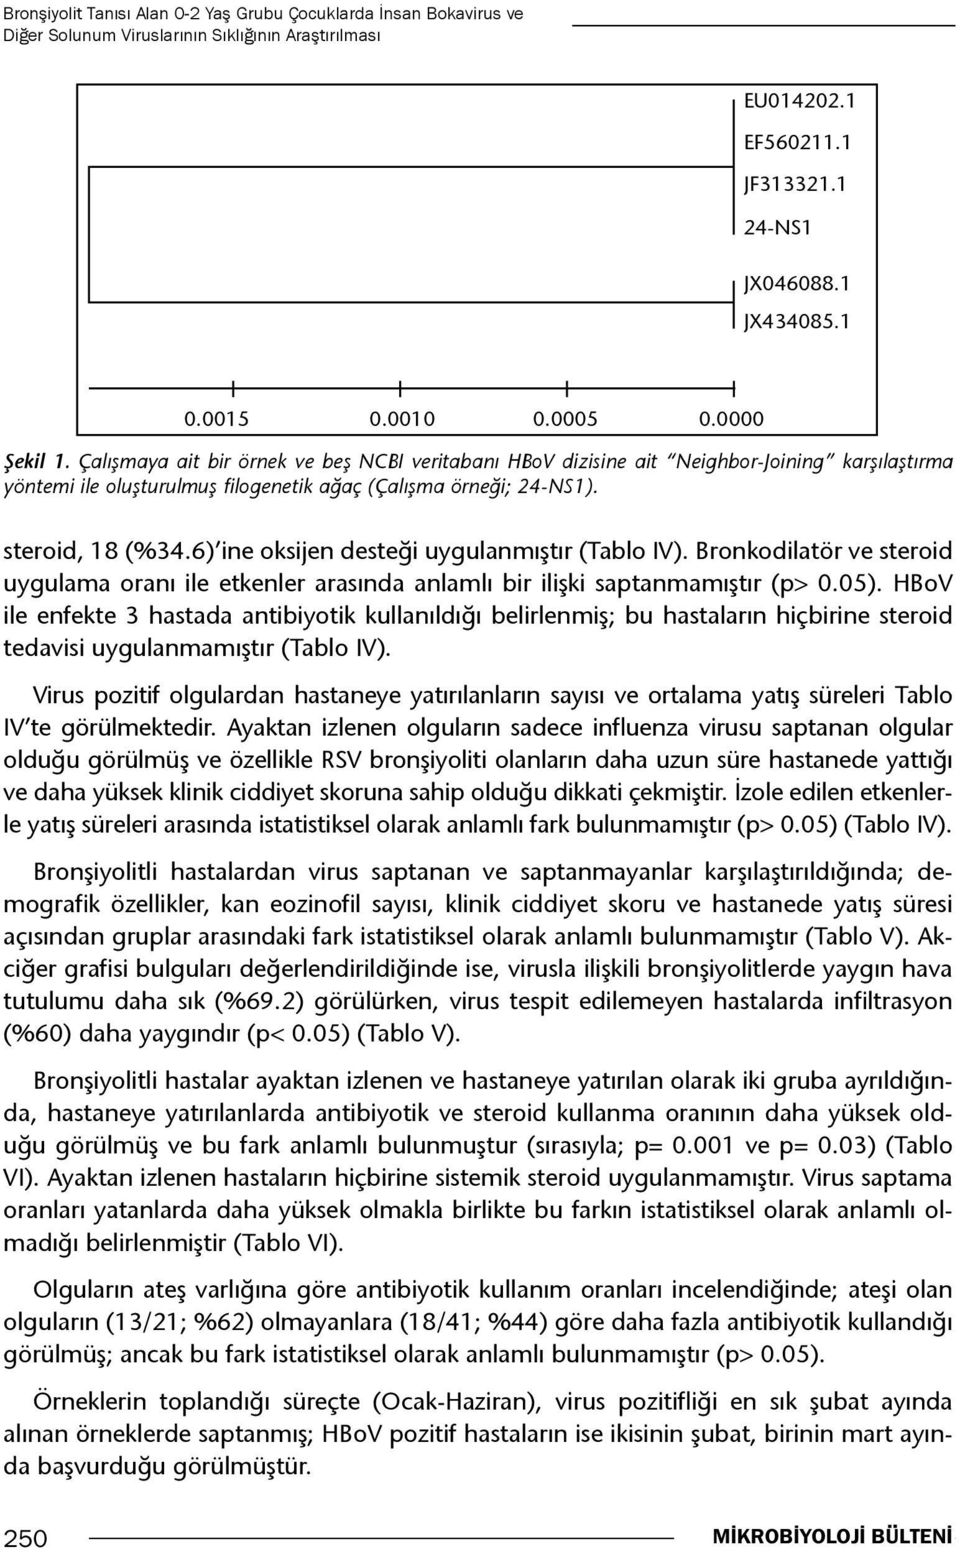 steroid, 18 (%34.6) ine oksijen desteği uygulanmıştır (Tablo IV). Bronkodilatör ve steroid uygulama oranı ile etkenler arasında anlamlı bir ilişki saptanmamıştır (p> 0.05).